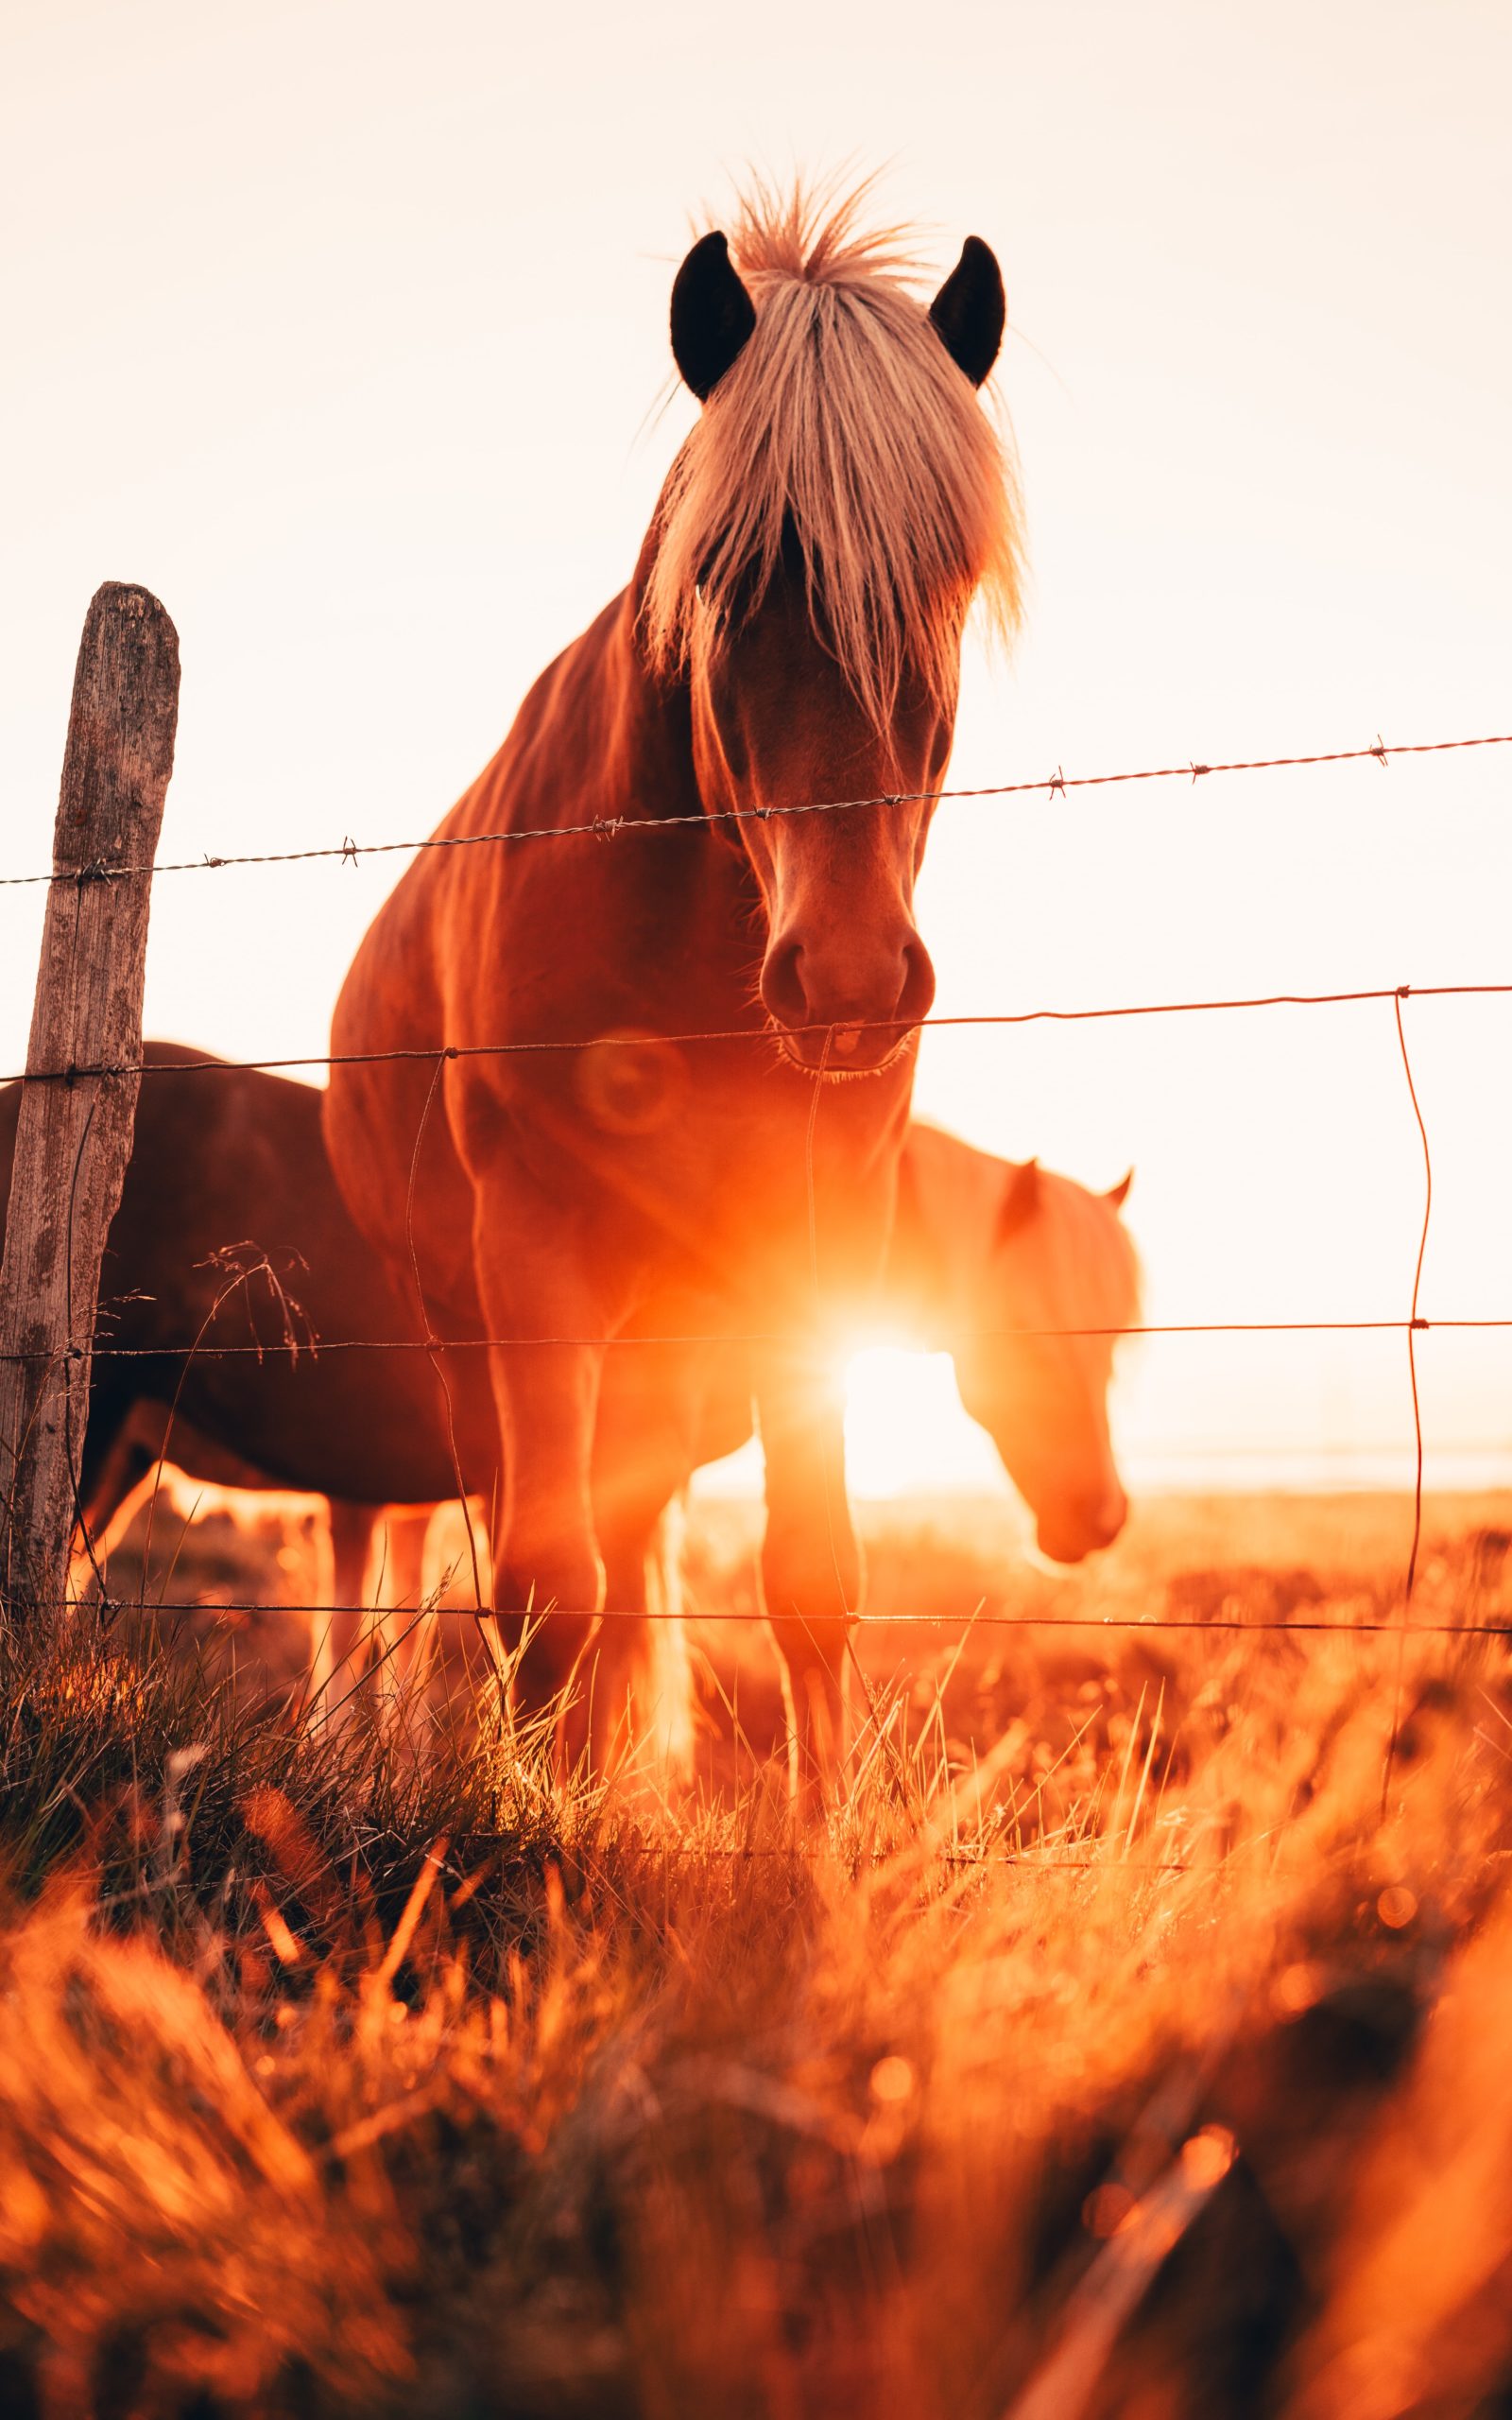 Two Icelandic horses enjoying the sunset.